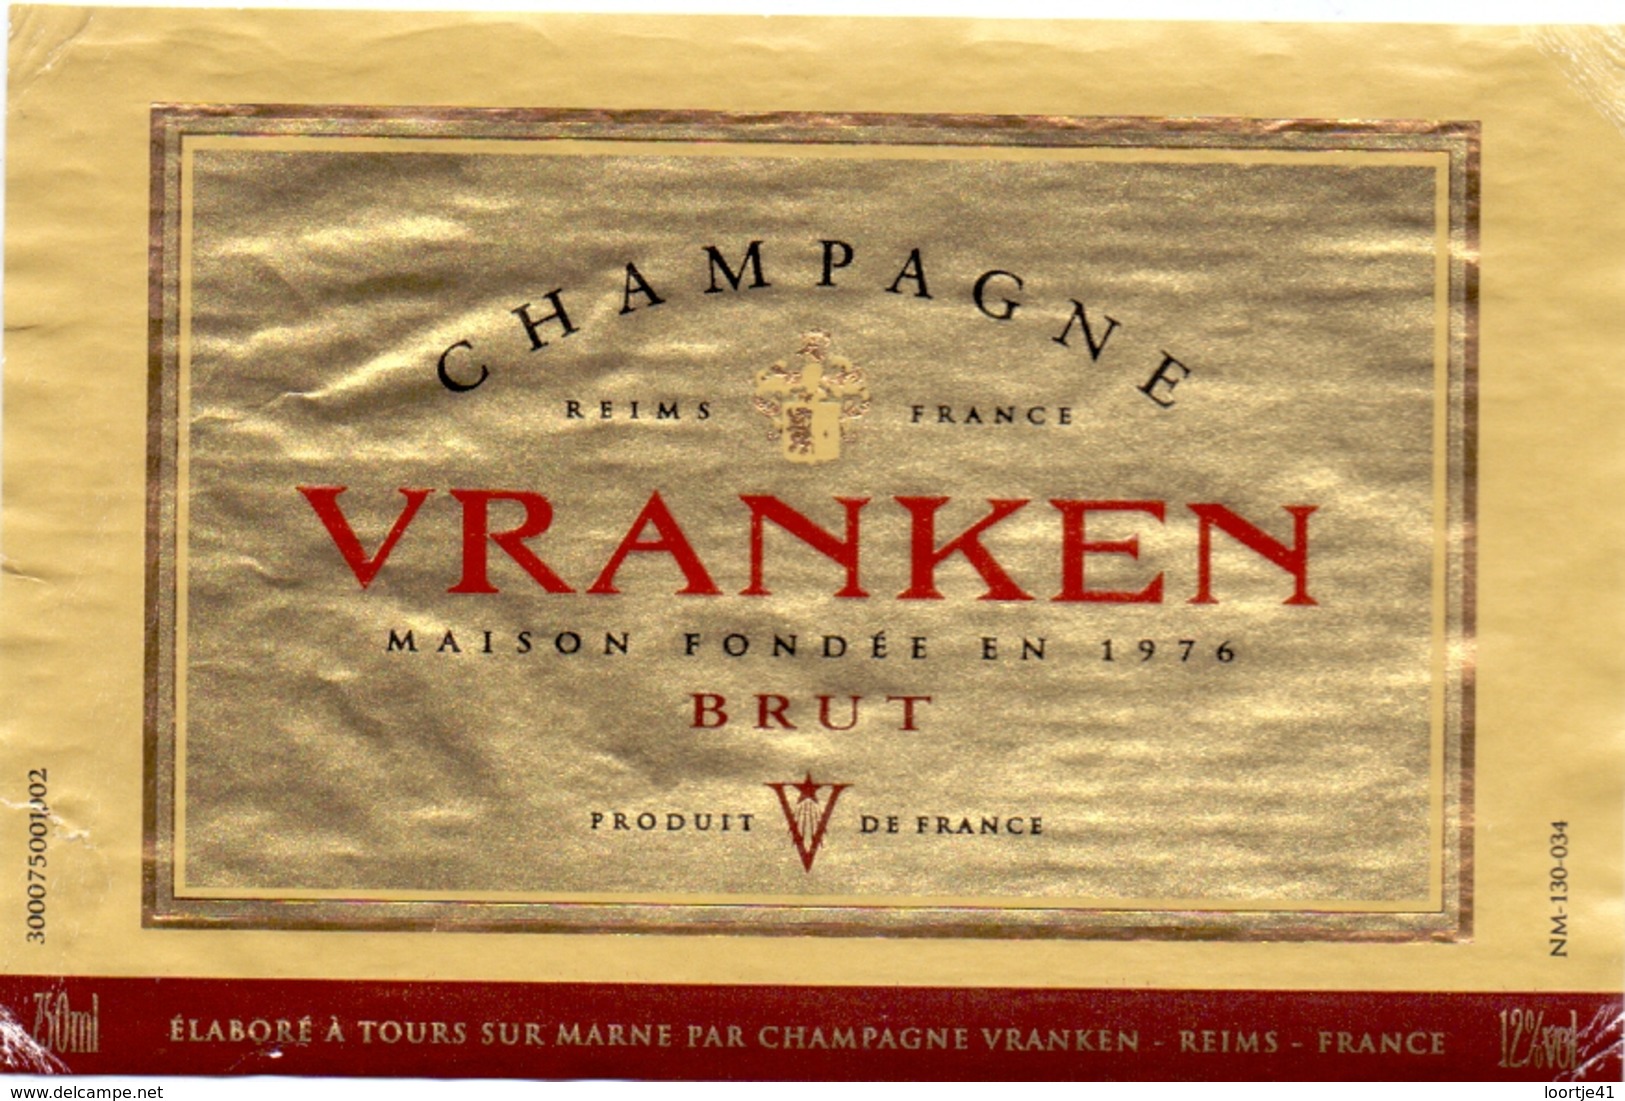 Vranken Şampanya etiketleri eski